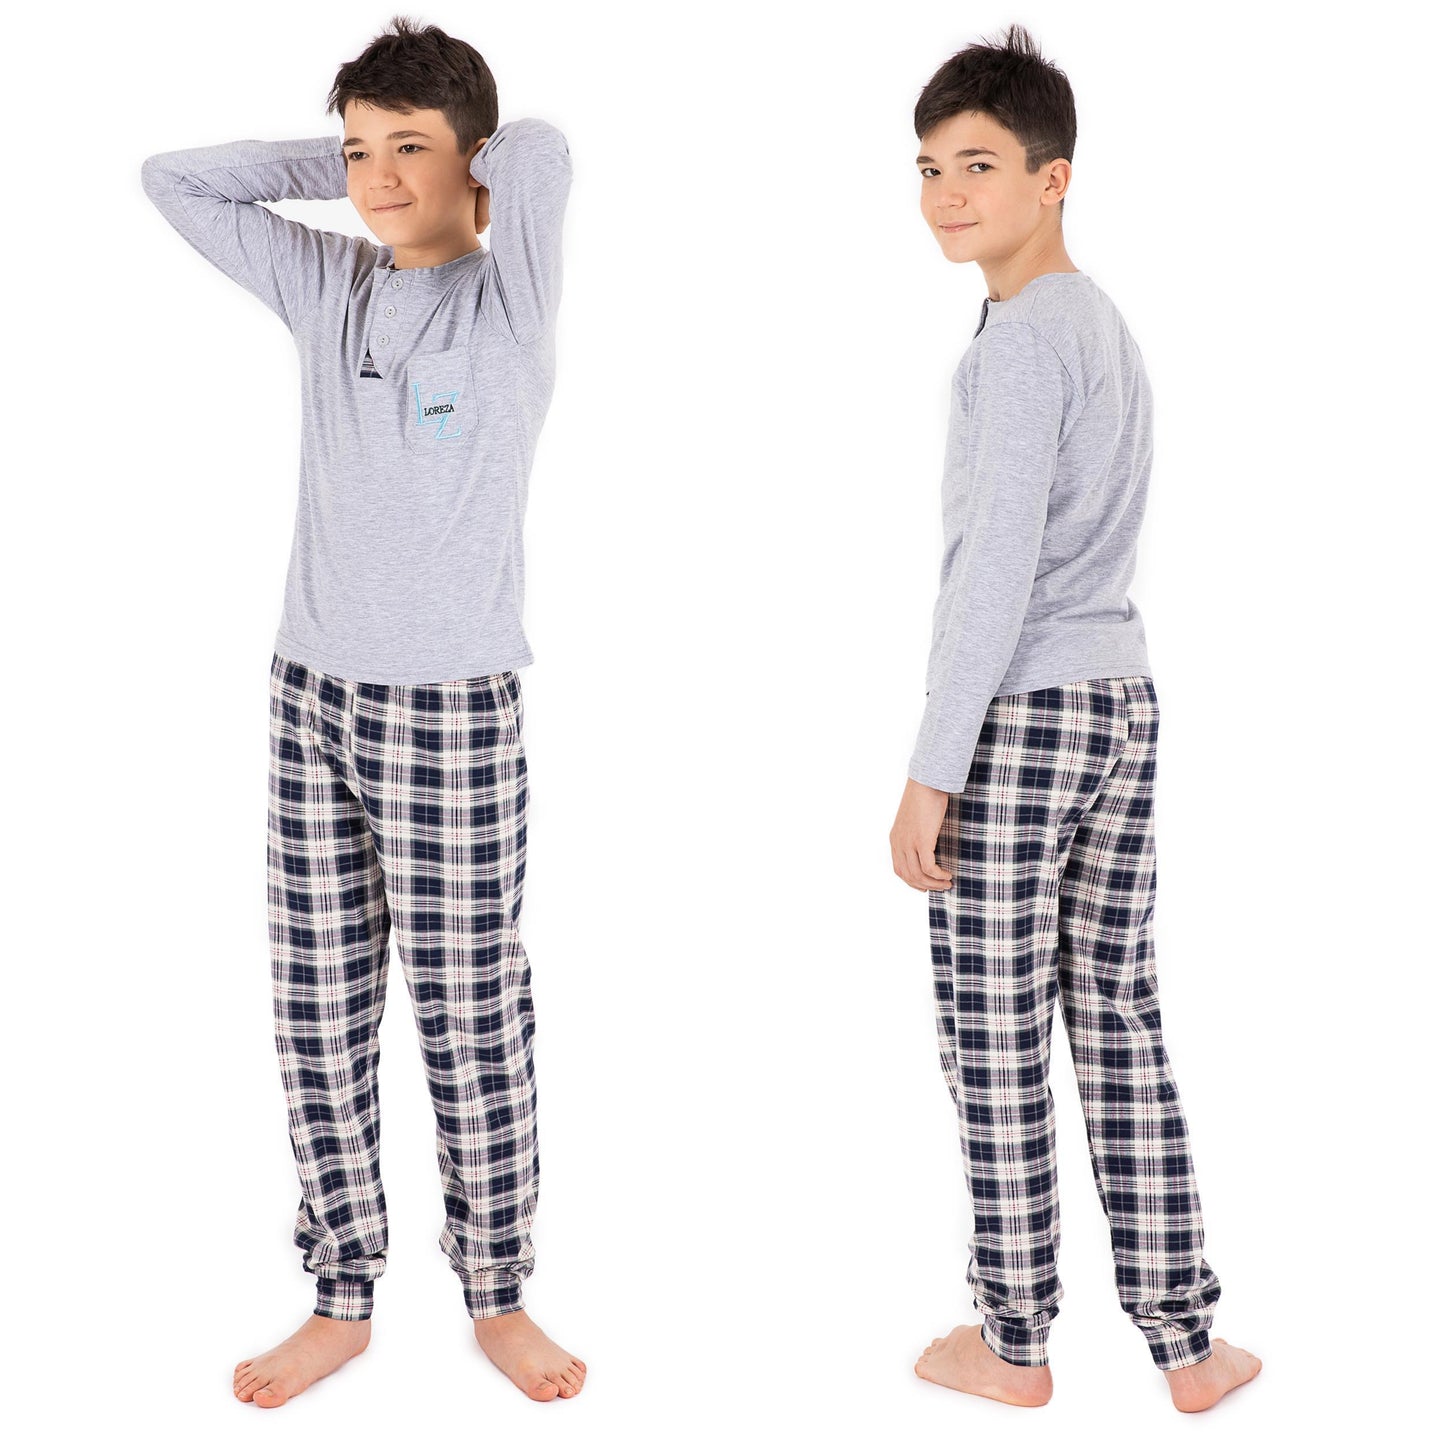 Jungen zweiteiliger Schlafanzug Langarm aus Baumwolle kariert